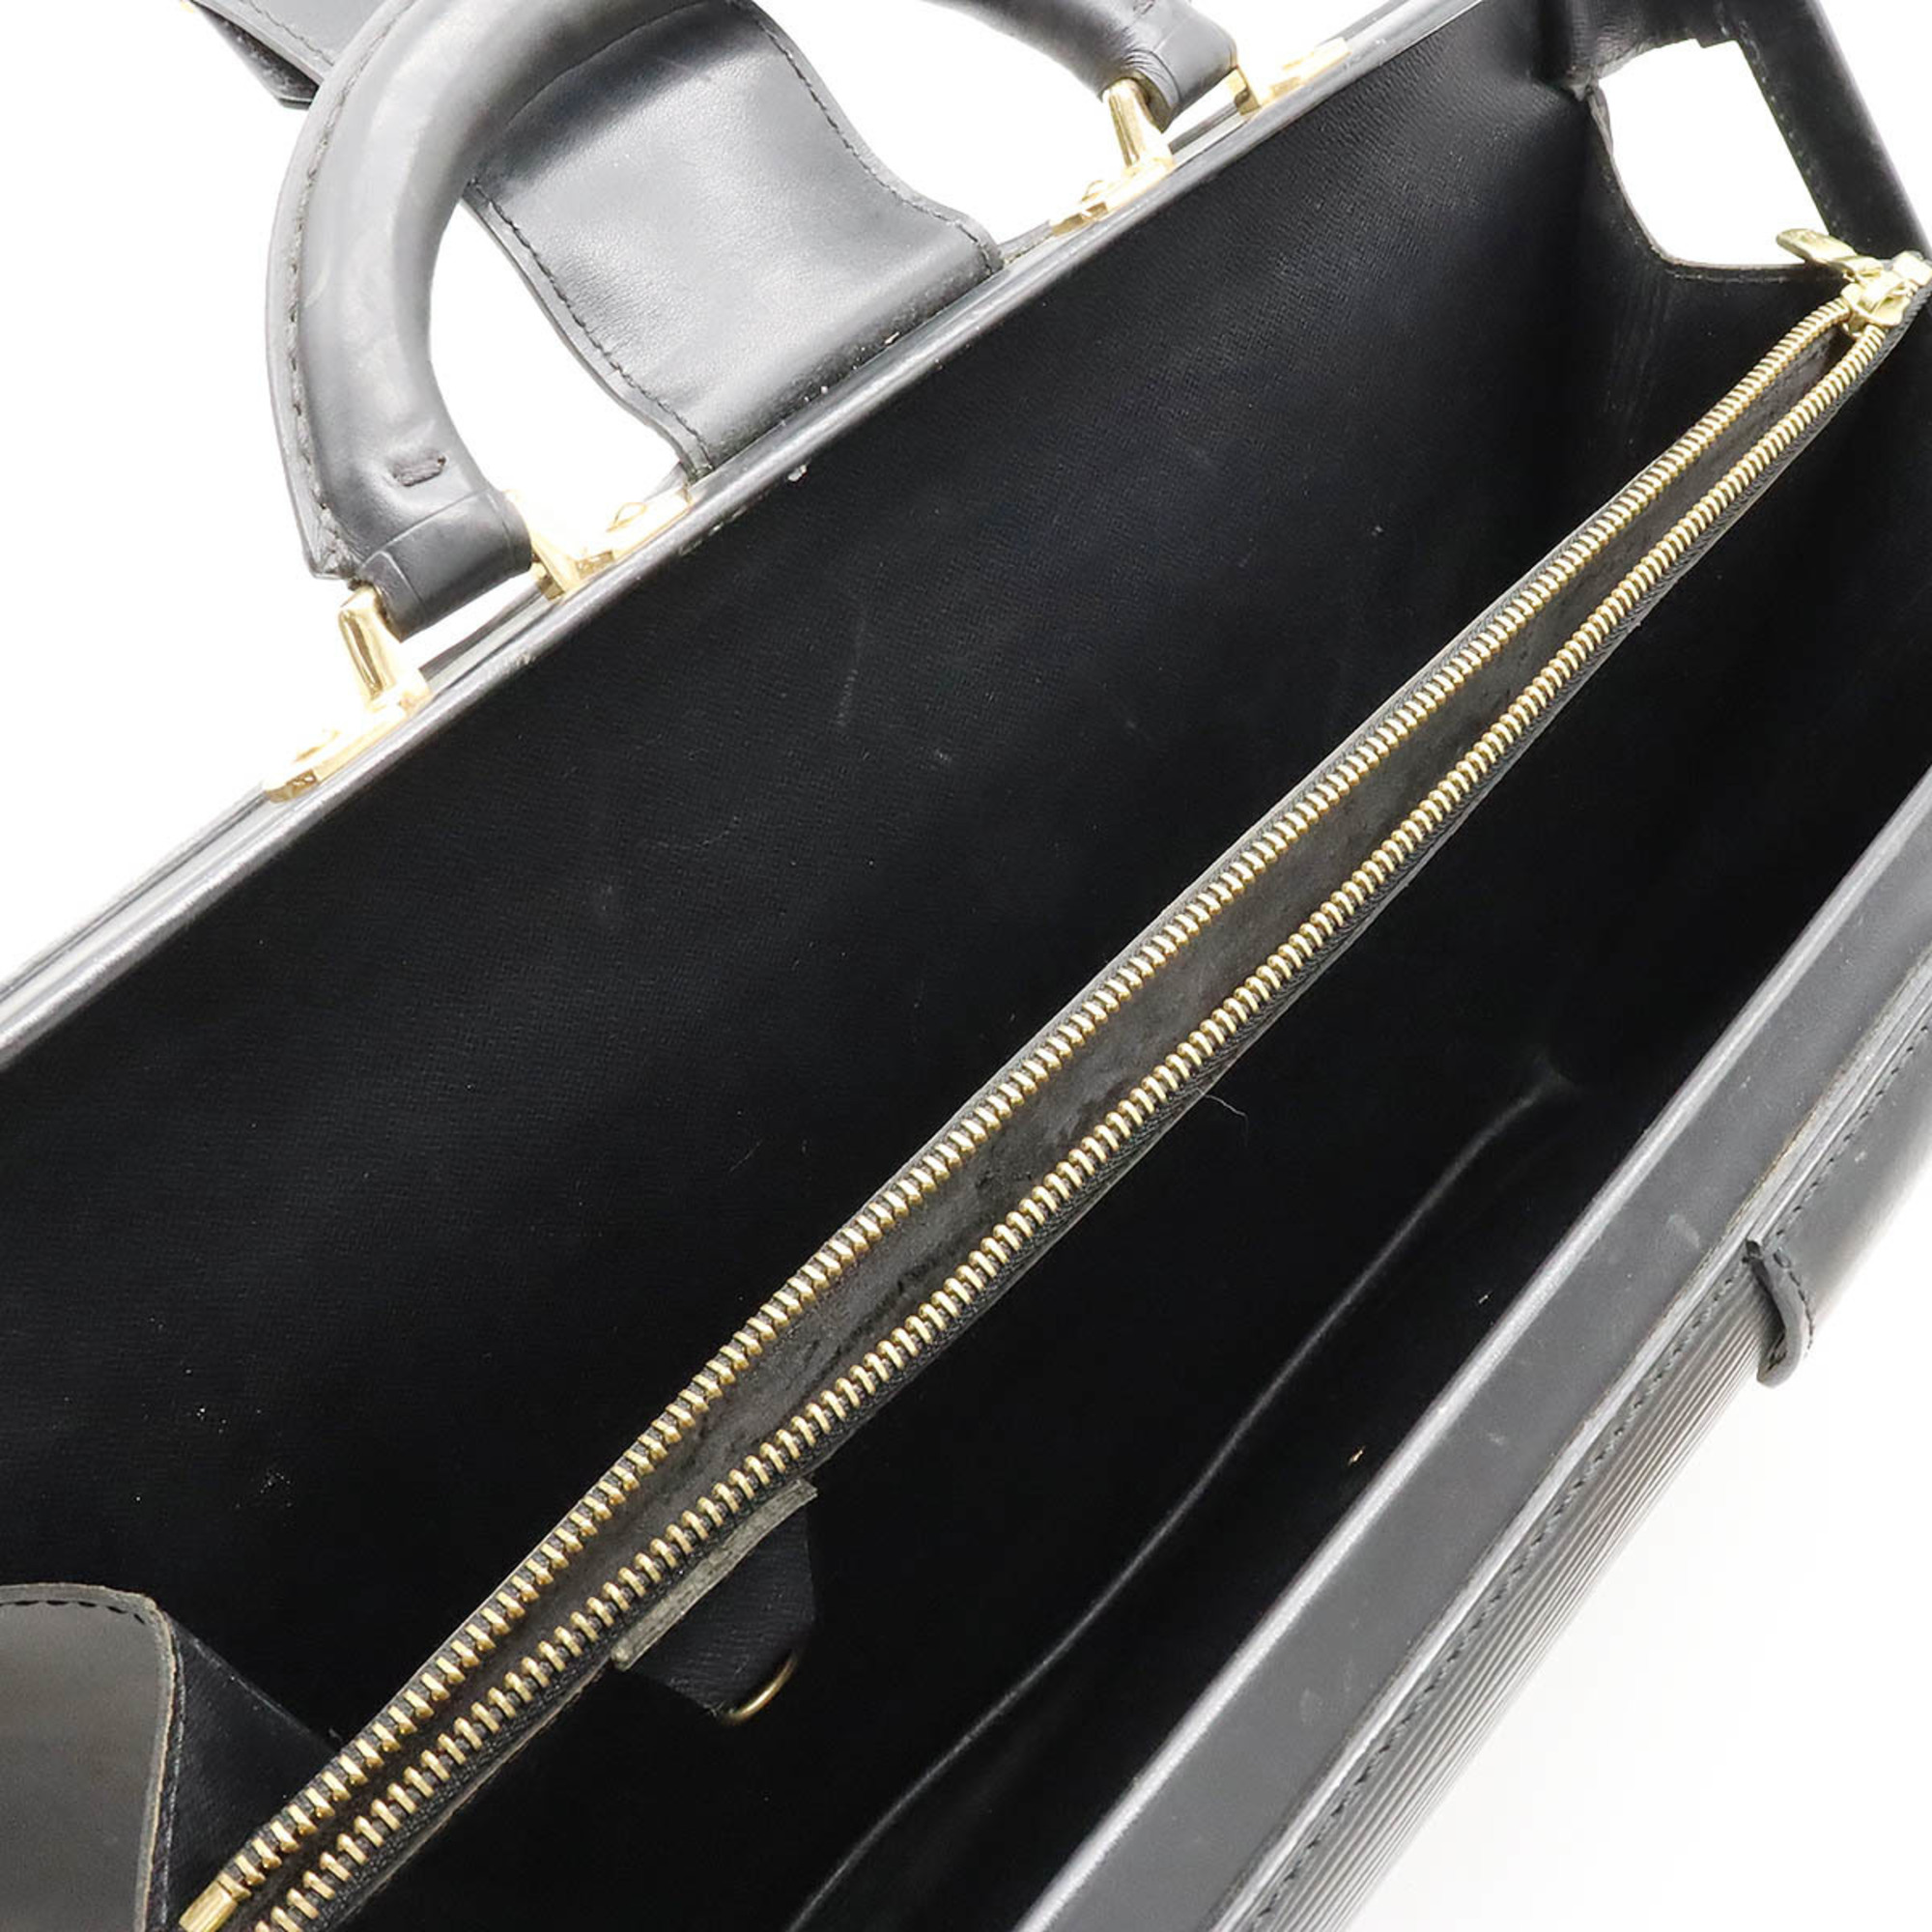 LOUIS VUITTON Louis Vuitton Epi Serviette Fermoir Bag Leather Noir Black Key Missing M54352